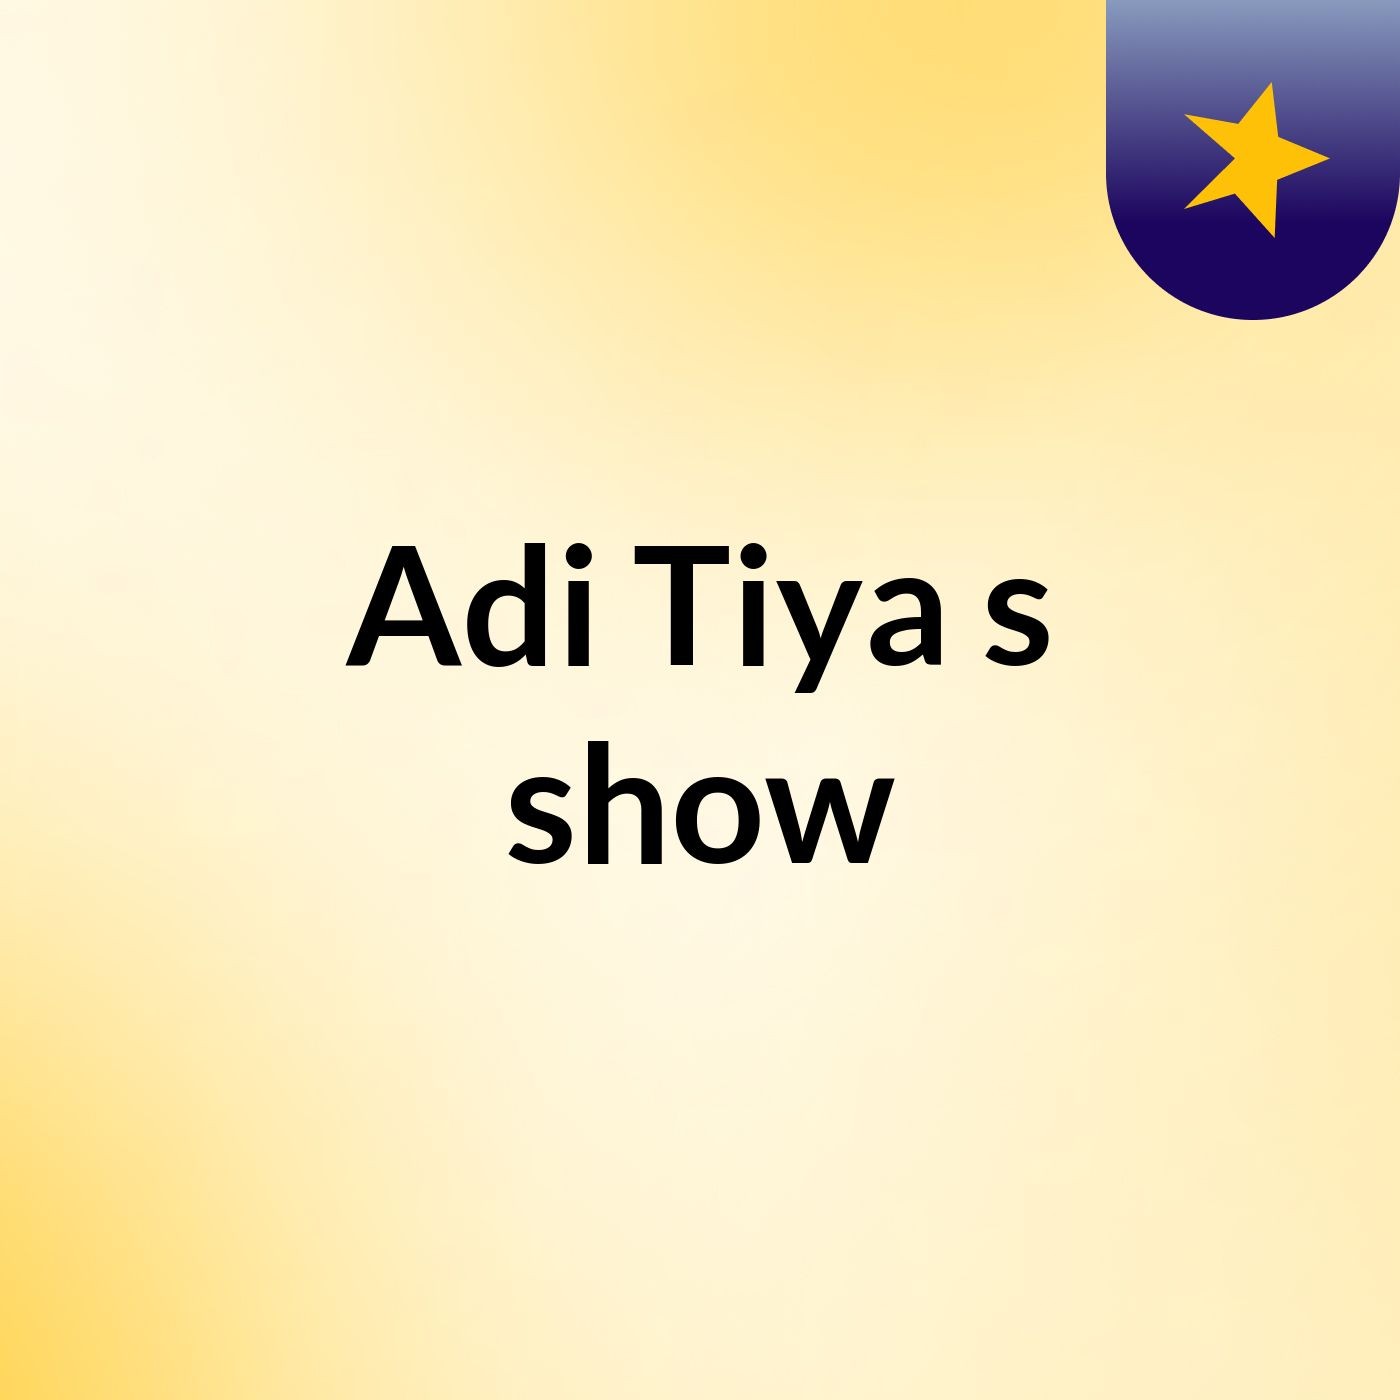 Adi Tiya's show